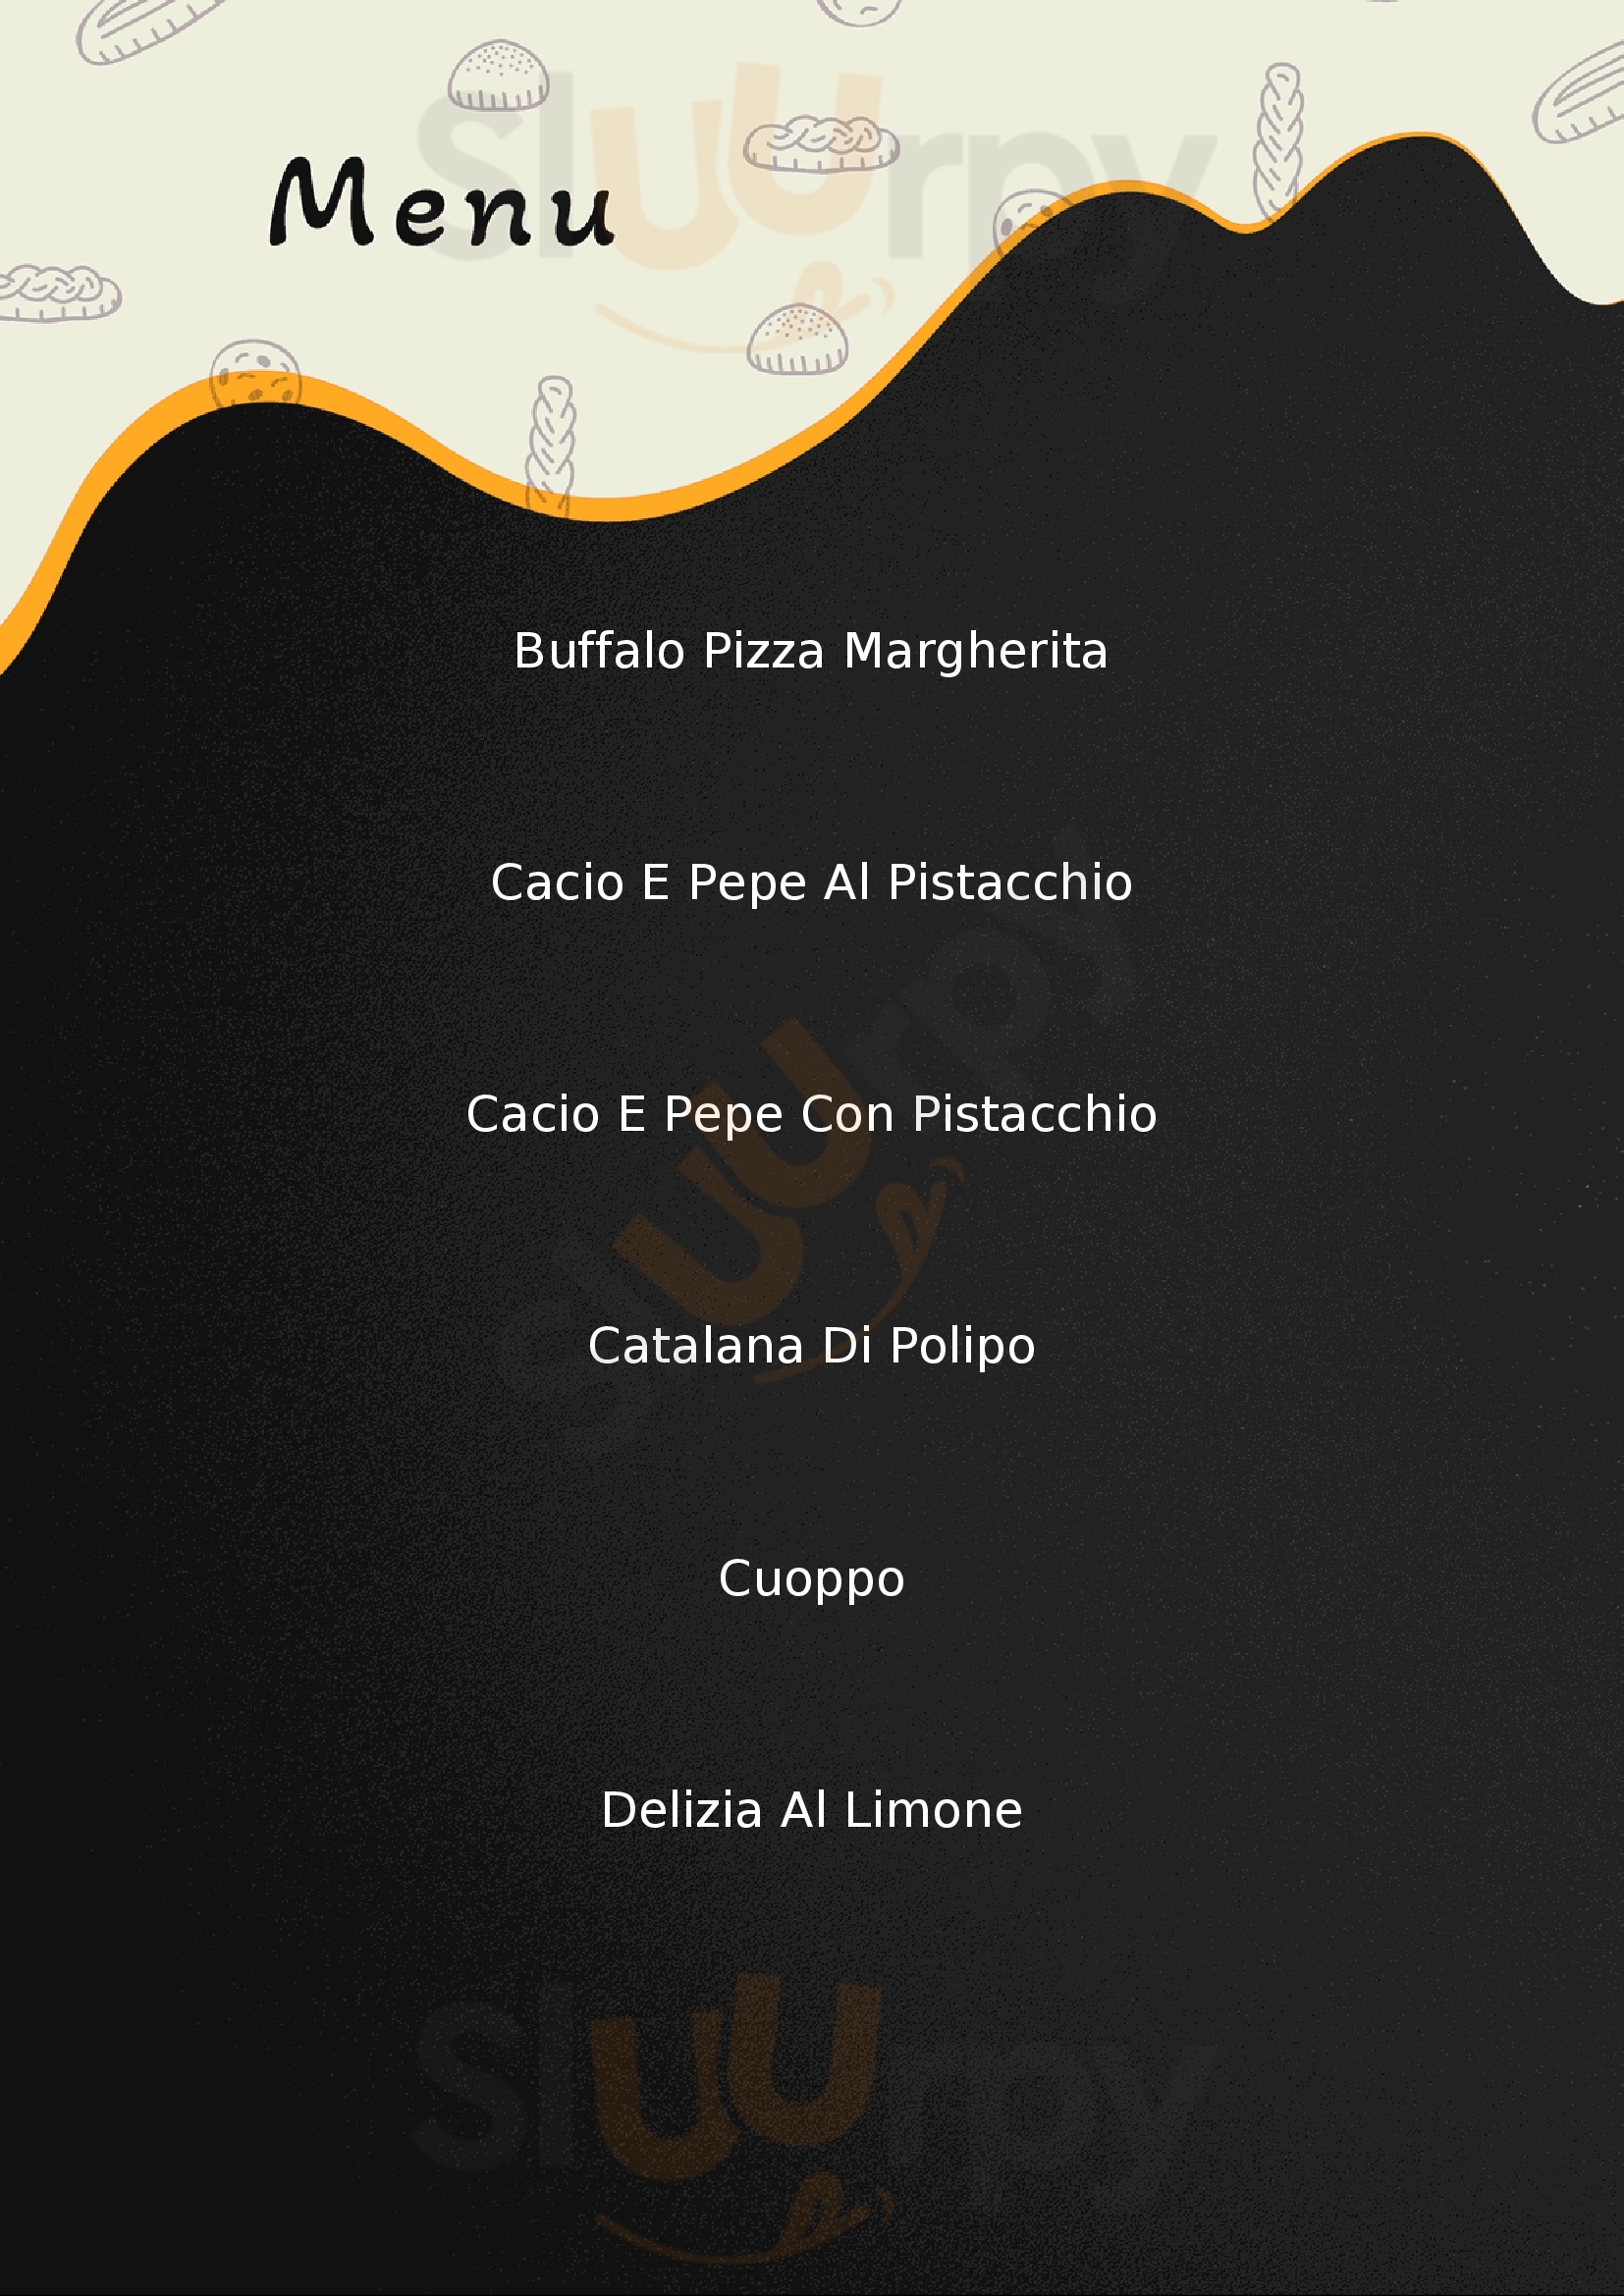 Vicious Pizza & Deli Milano menù 1 pagina